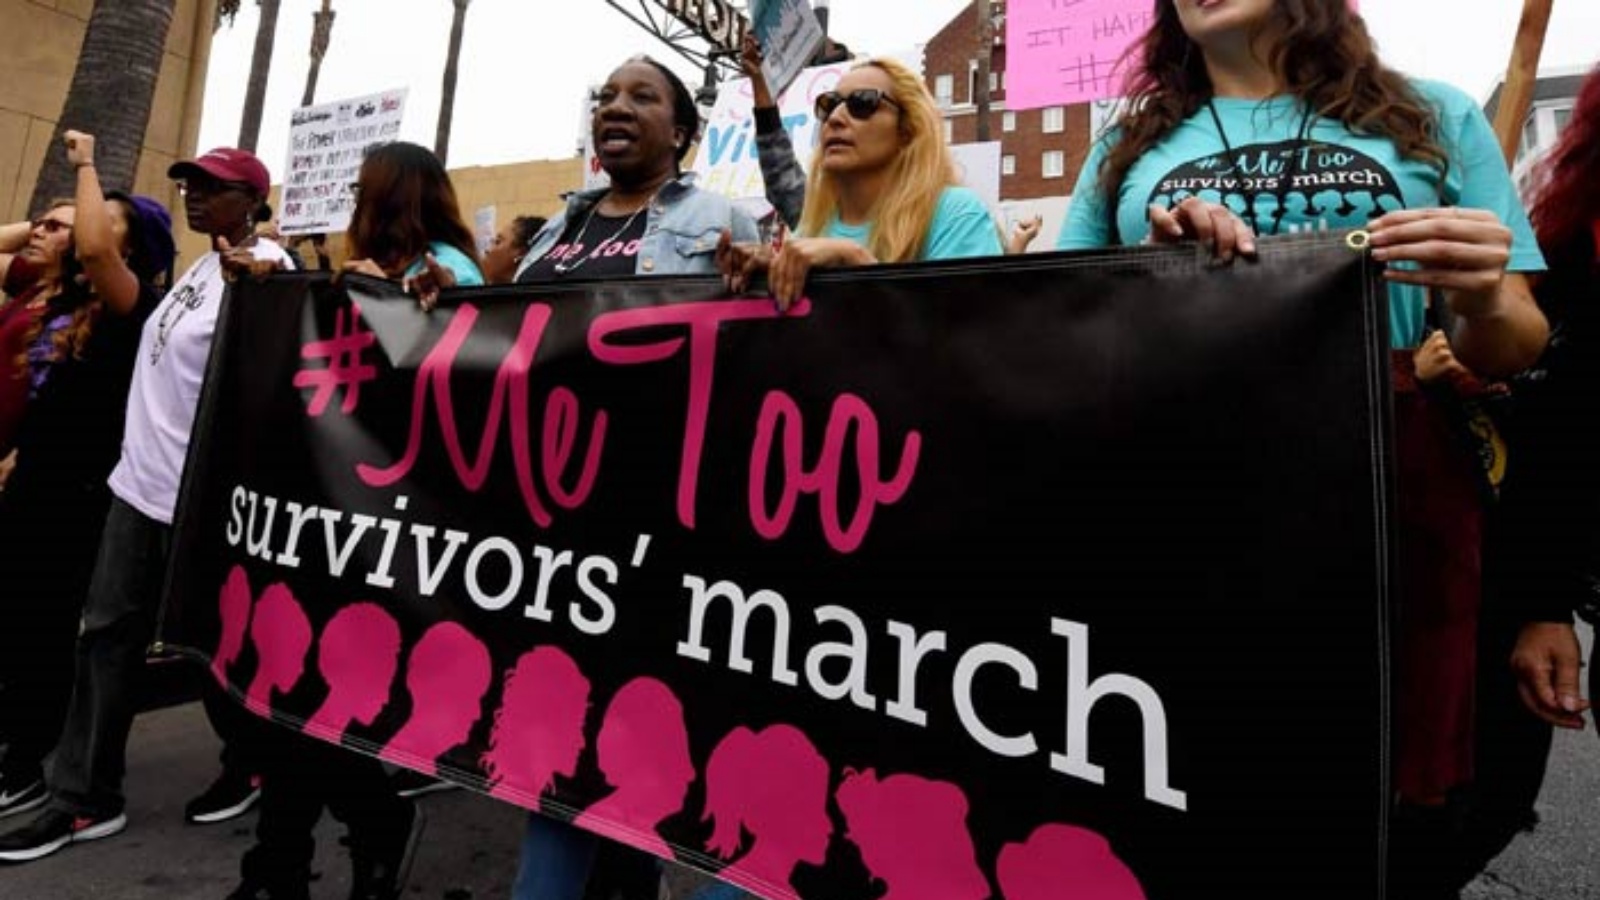 ضحايا التحرش الجنسي والاعتداء الجنسي والاعتداء الجنسي وأنصارهم يتظاهرون خلال مسيرة #MeToo في هوليوود، كاليفورنيا في 12 نوفمبر 2017